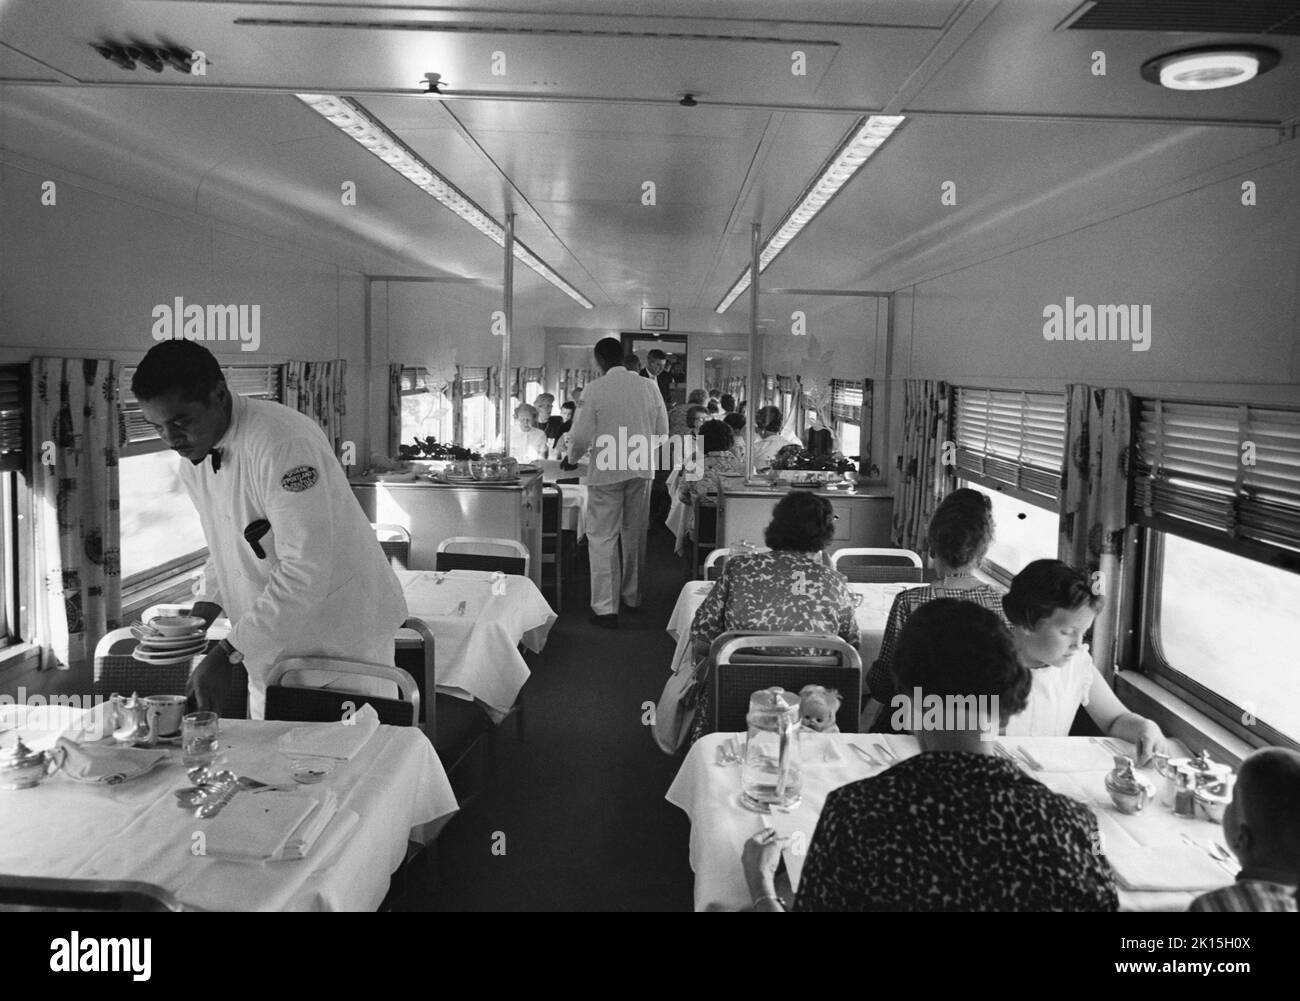 Une voiture-restaurant à bord d'un train, vers 1960. Banque D'Images